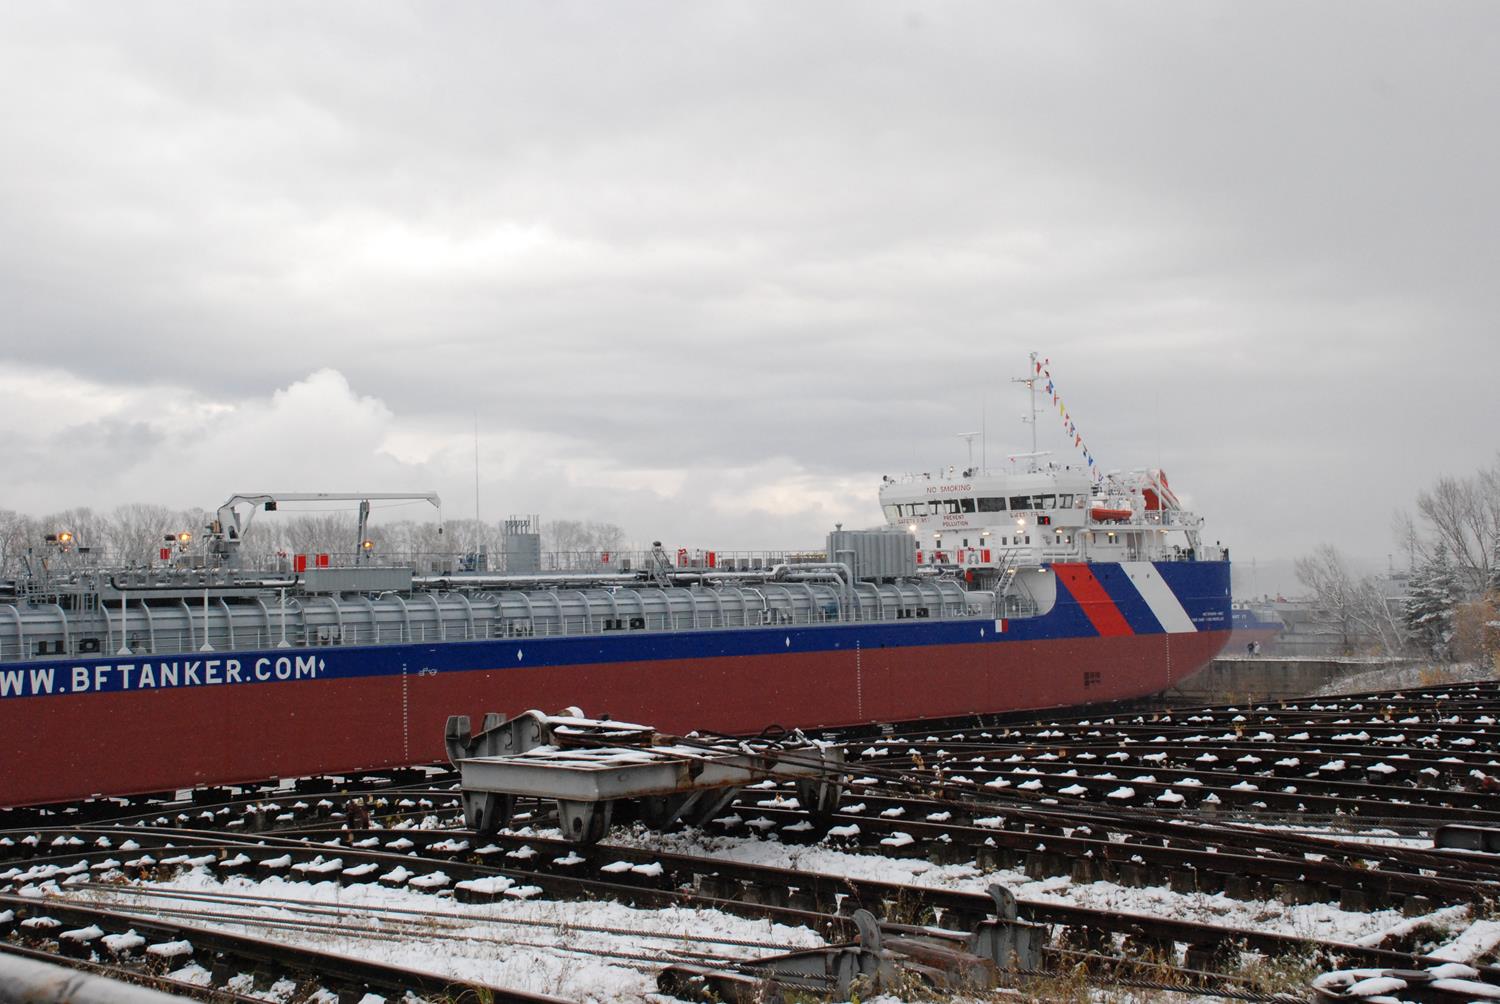 Третий танкер-химовоз нового поколения спущен на воду в Нижнем Новгороде (ФОТО) - фото 2